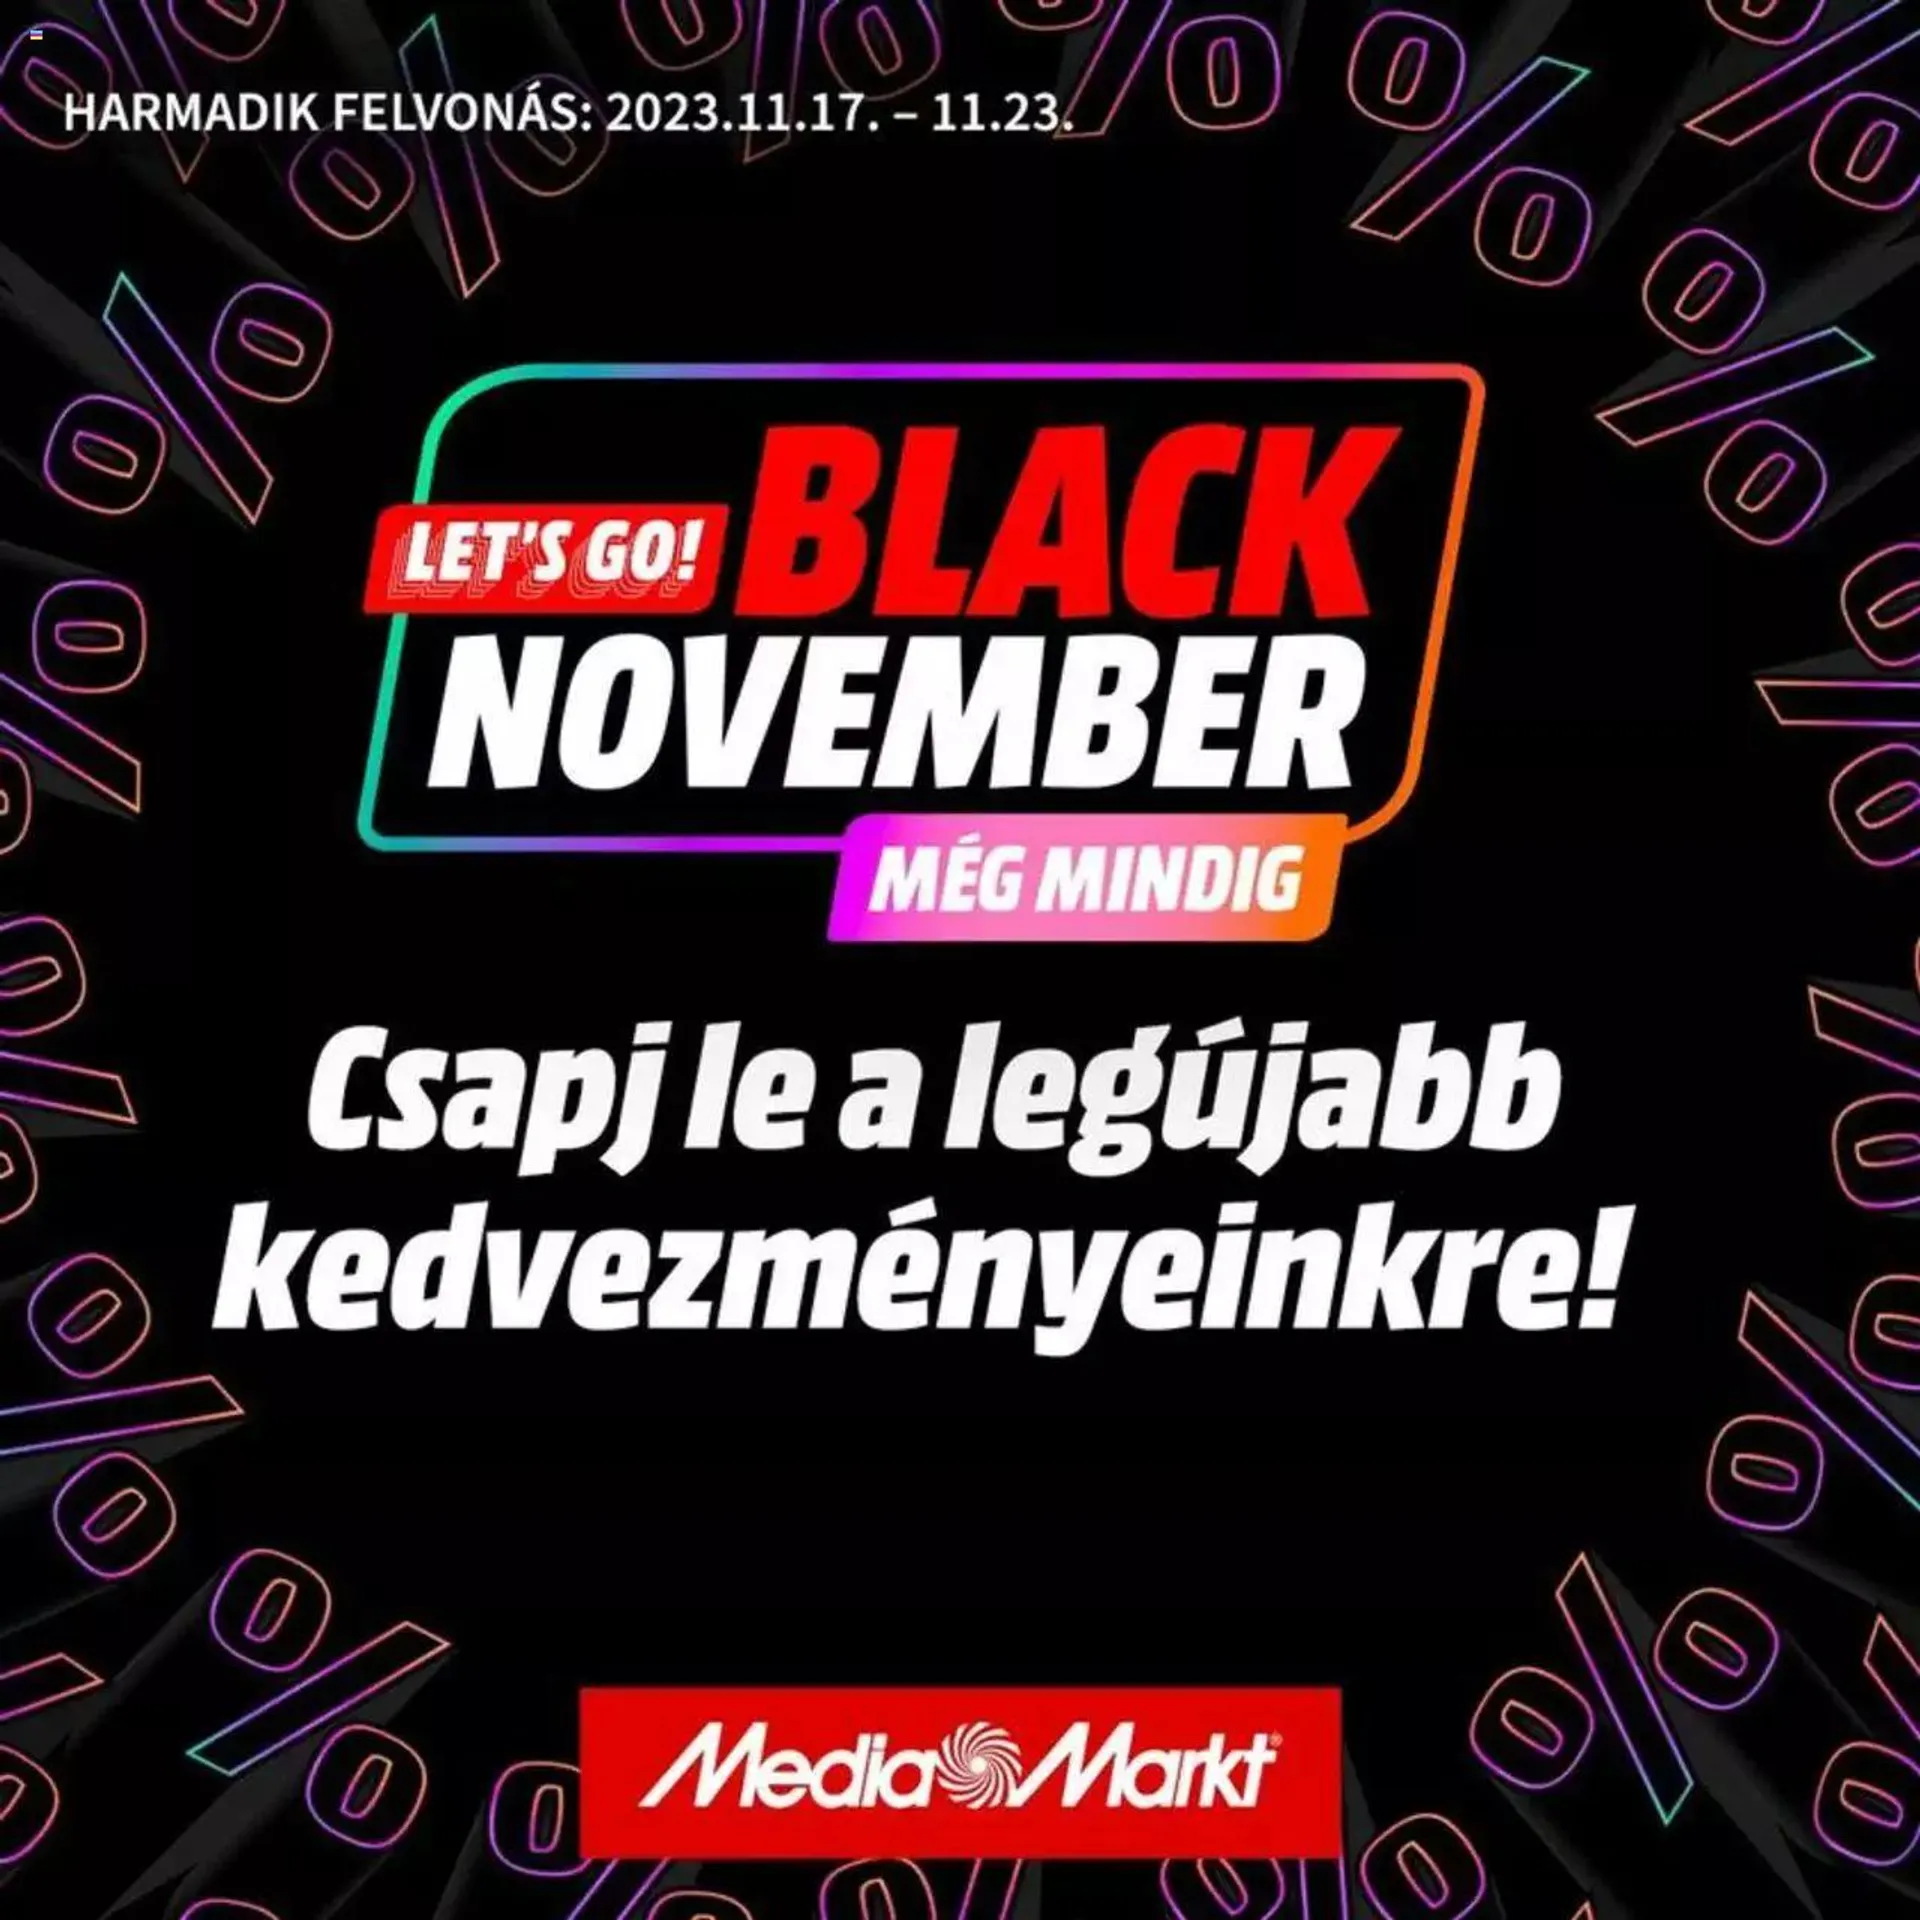 Media Markt - Black November értesítés